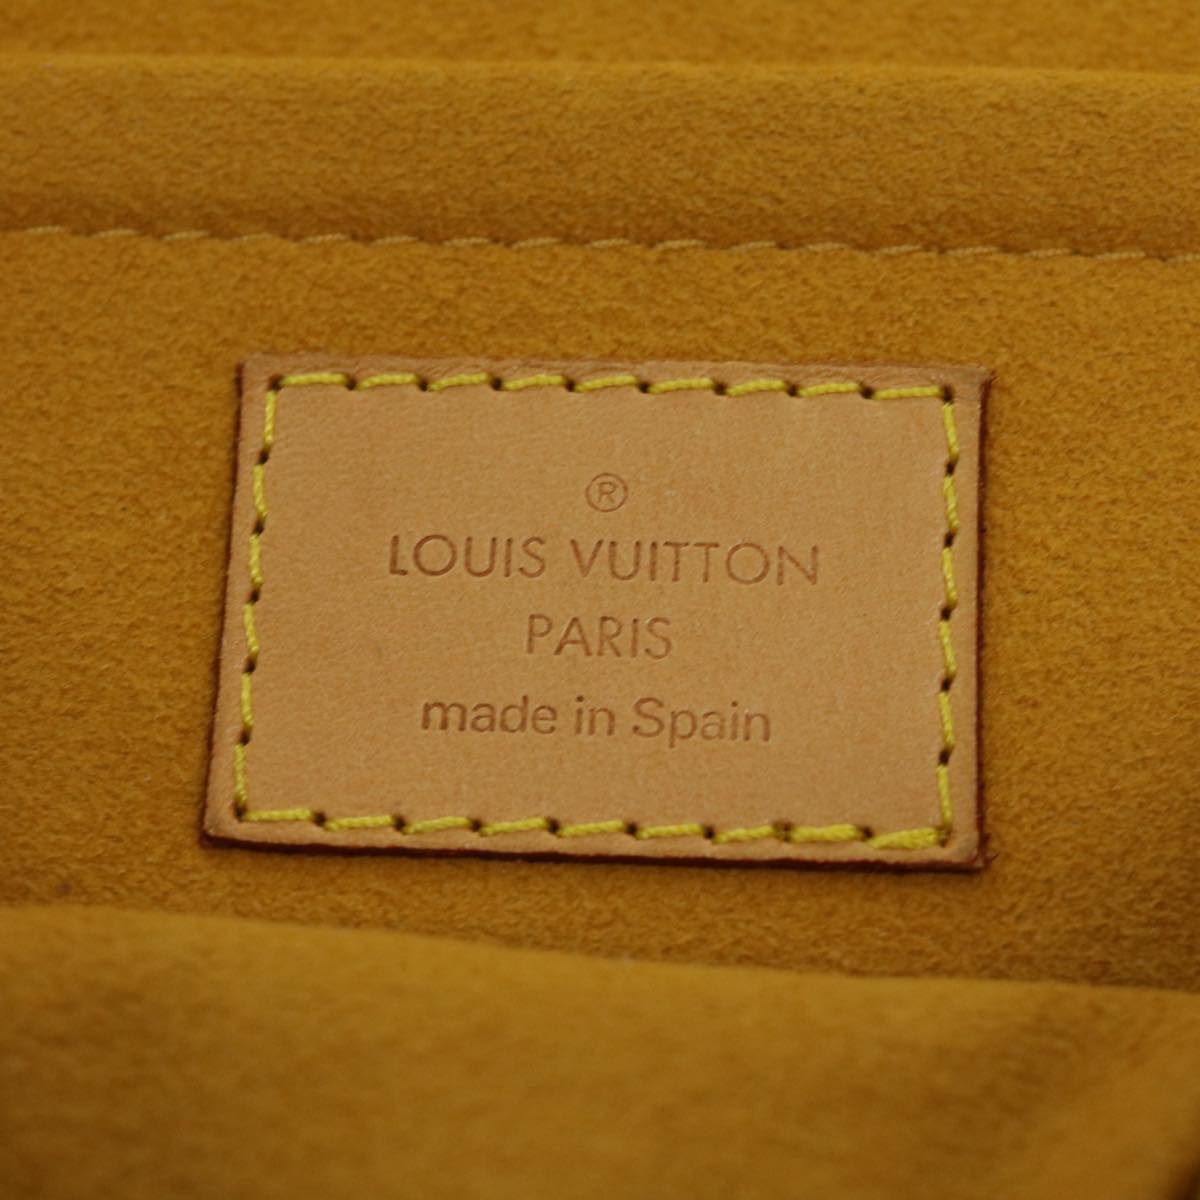 LOUIS VUITTON Monogram Denim Mini Preity Shoulder Bag Blue M95050 Auth am3243A